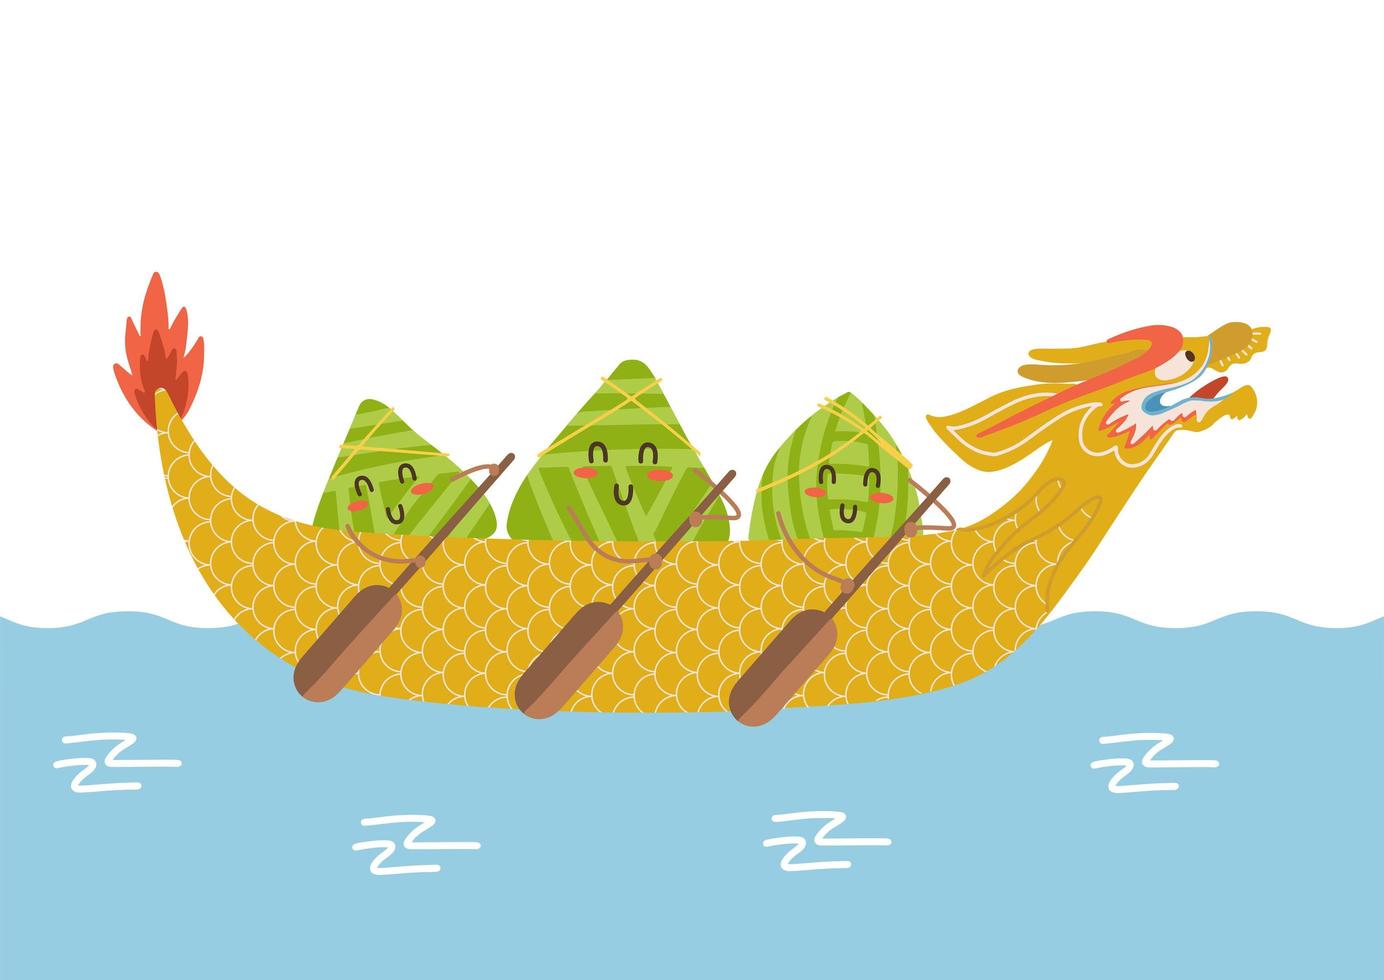 personagens de desenhos animados de bolinhos de arroz chinês kawaii. ilustração do festival do barco dragão. barco colorido em corrida na água. design de vetor plano com letras